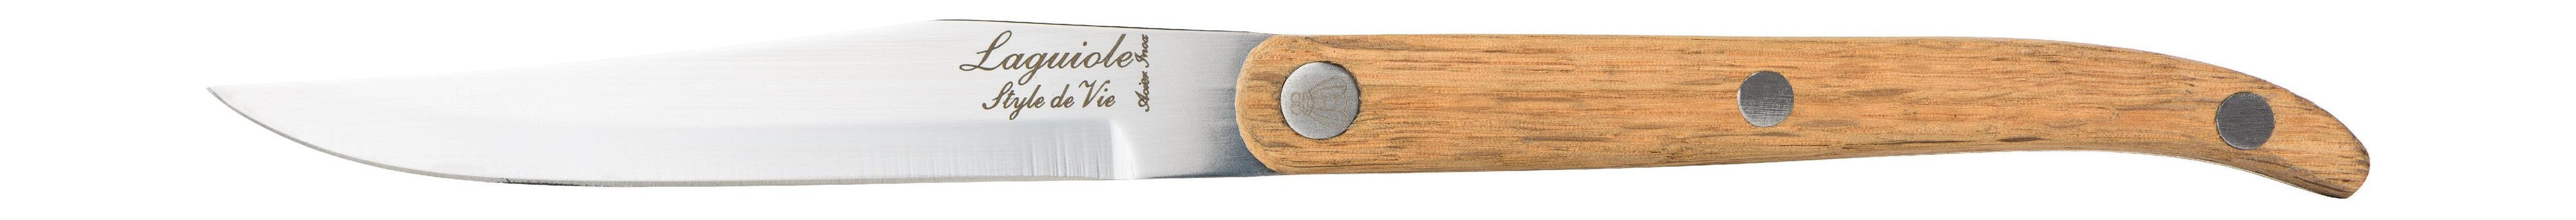 Style De Vie Authentique Laguiole Innovation Line Steak Knives 6 Piece Set Oak Wood, Smooth Blade